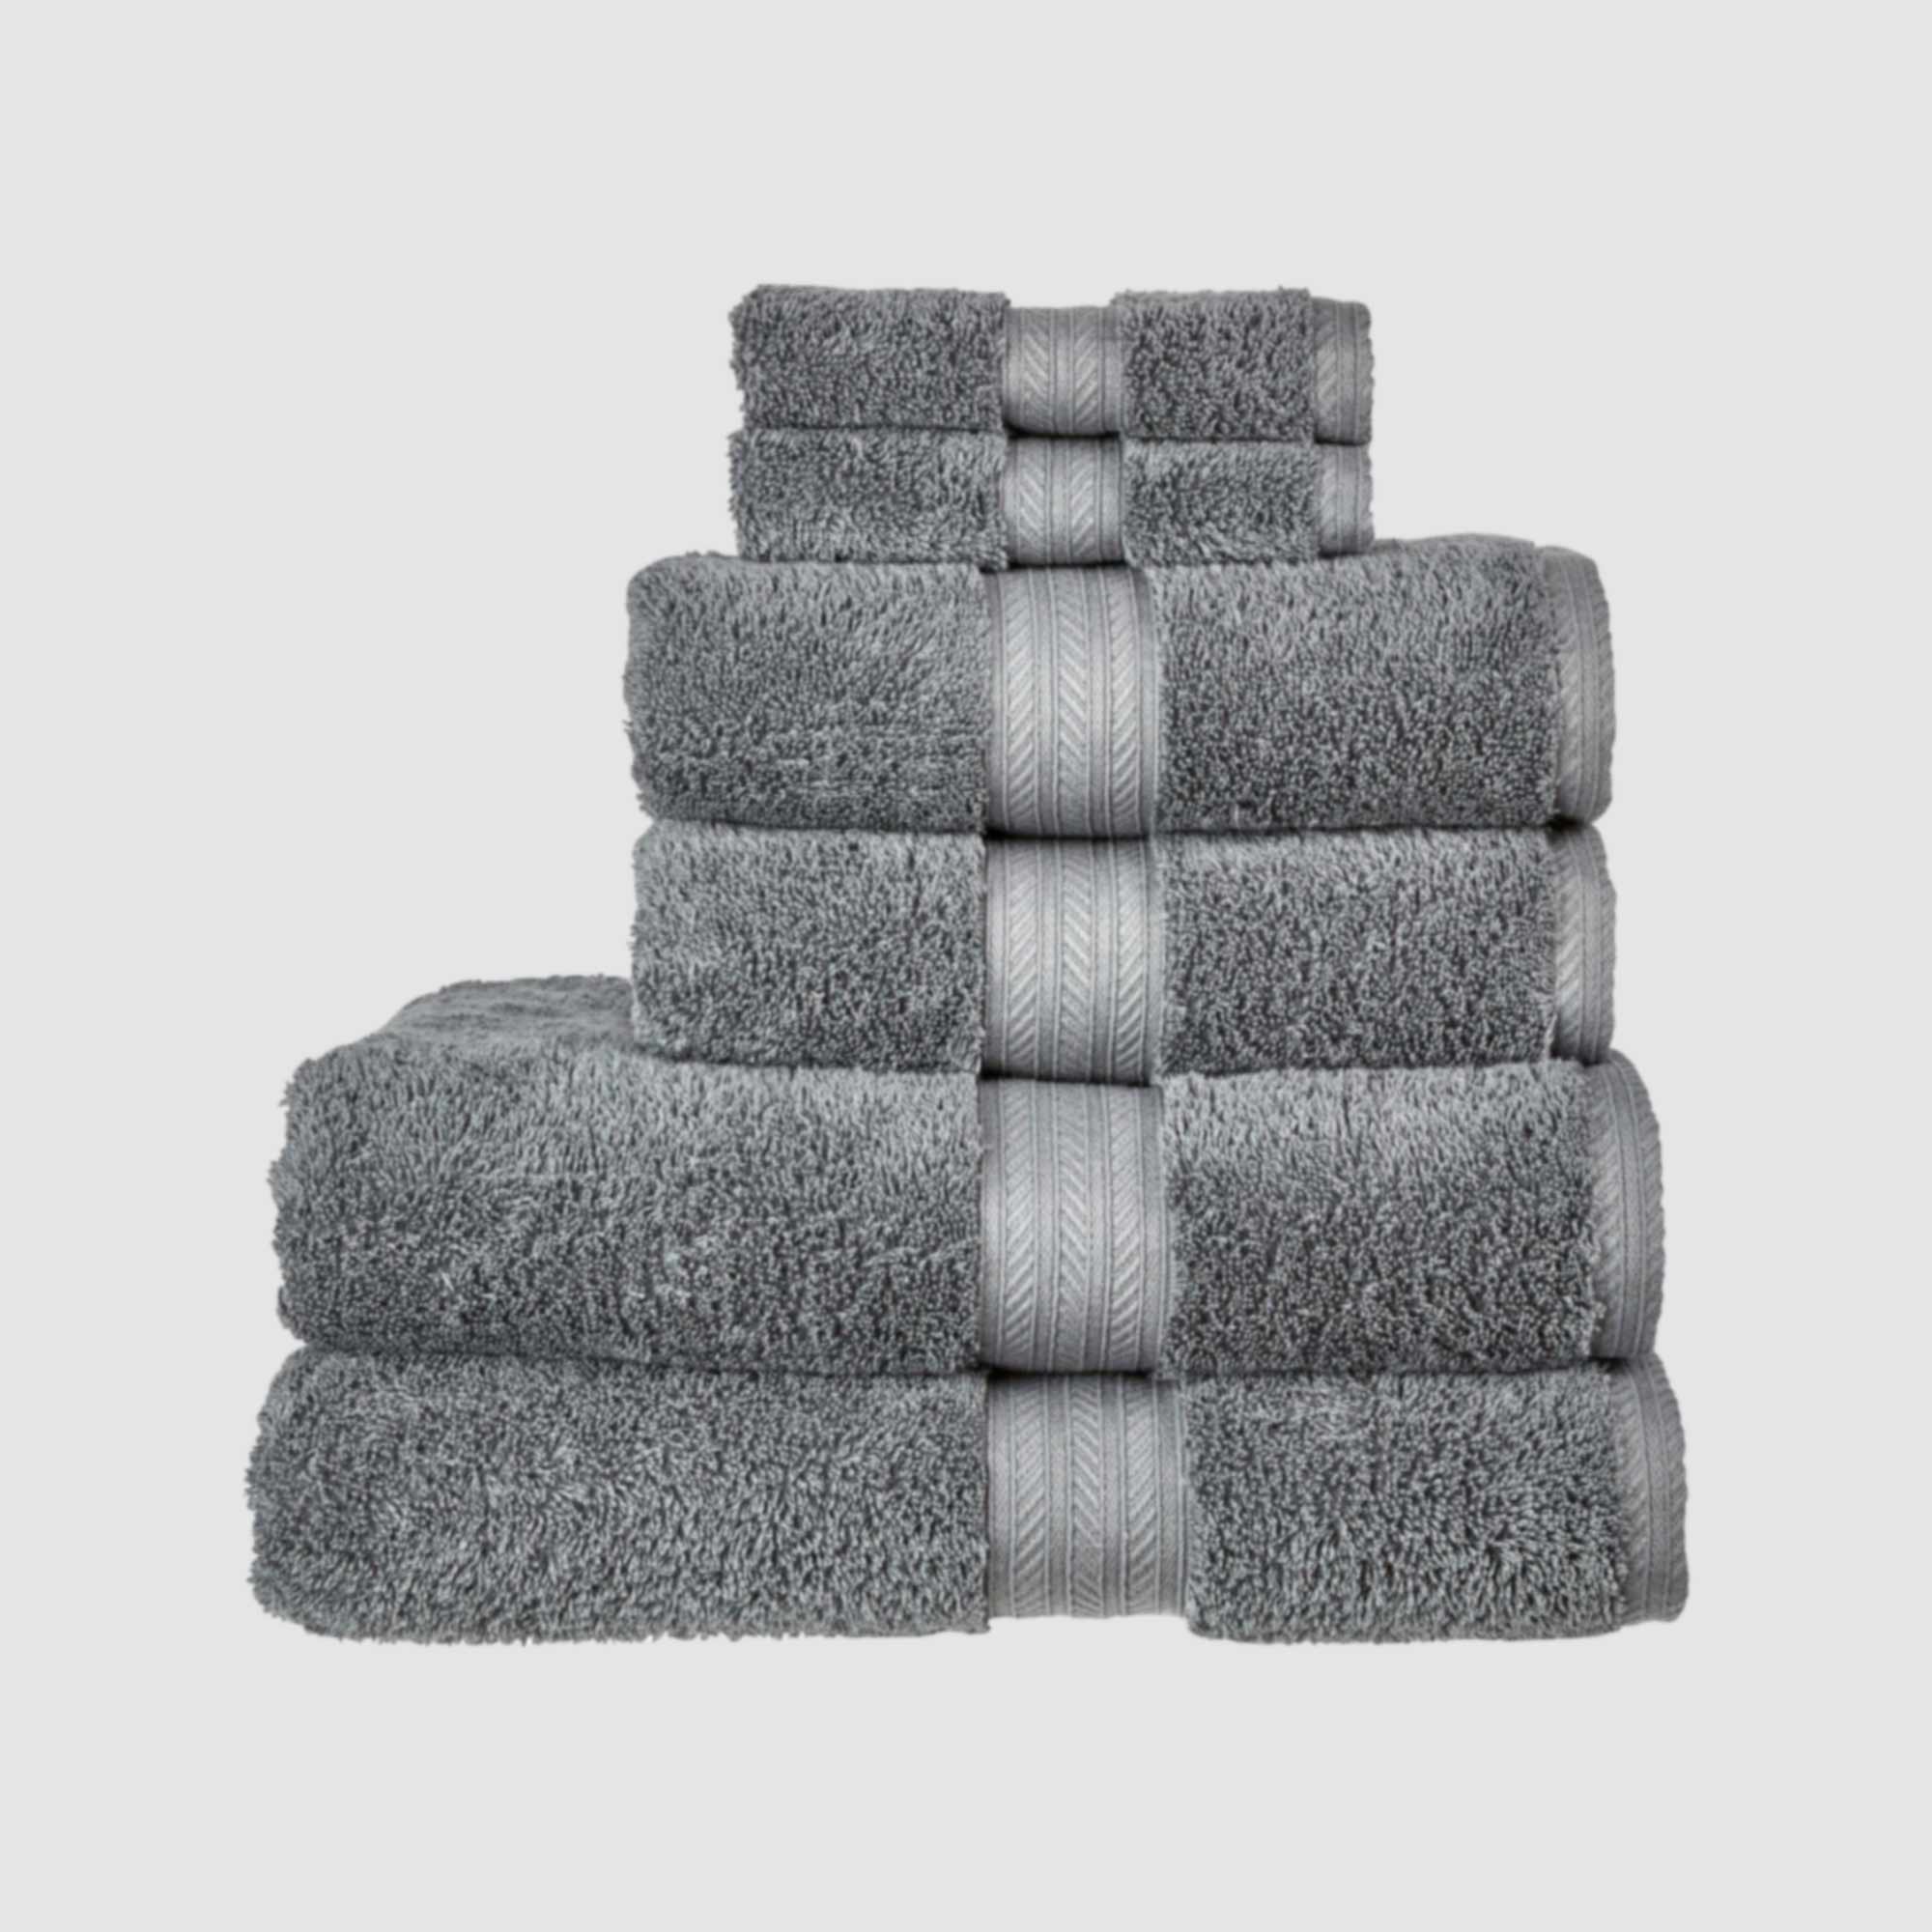 Christy Renaissance Bath Towel